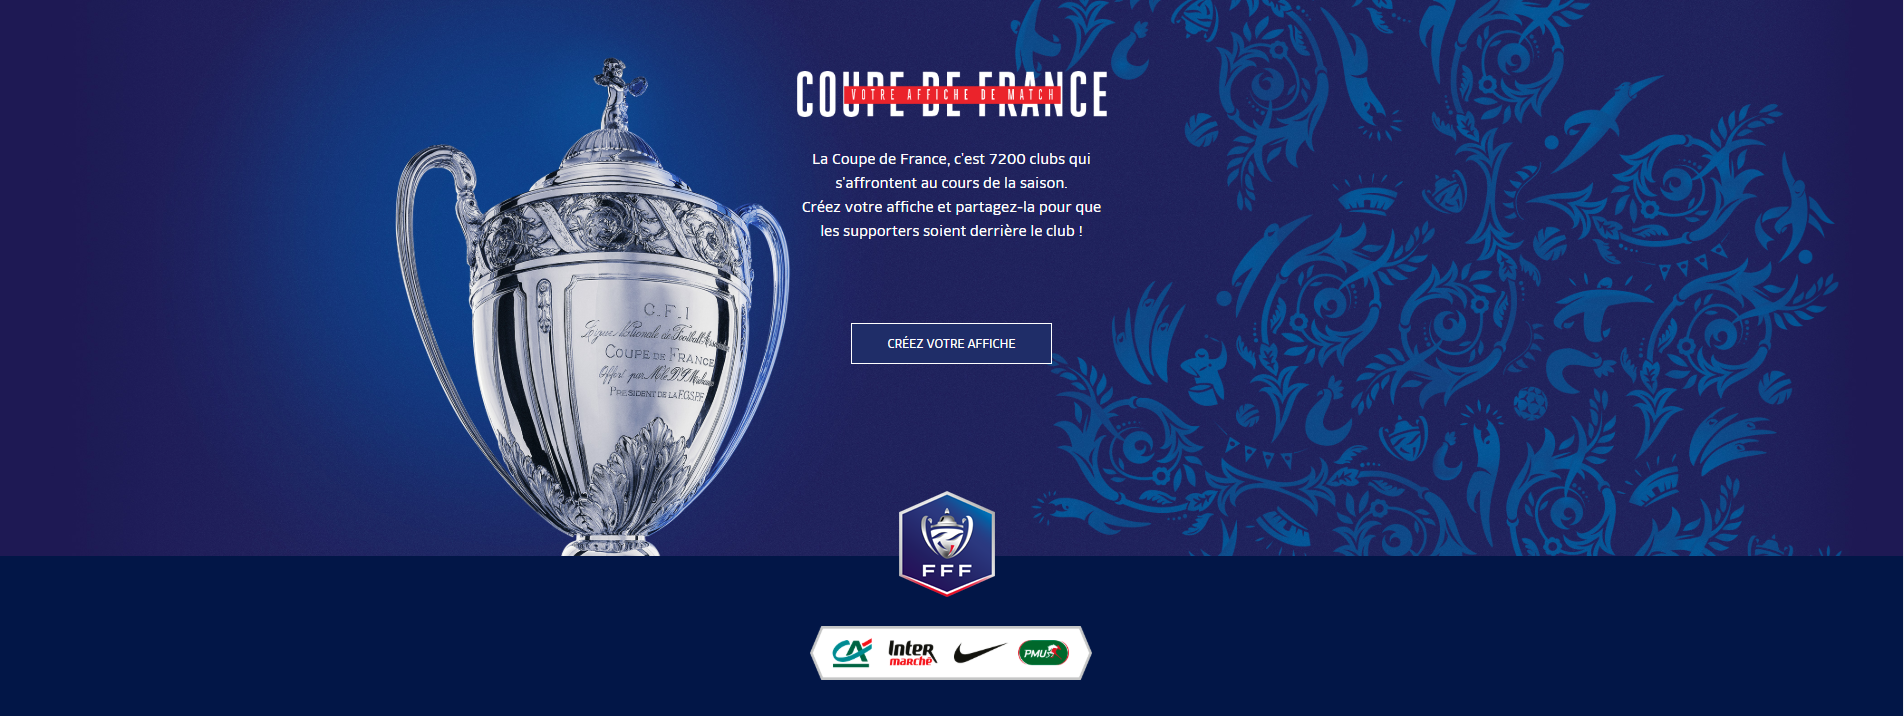 Tirage Du 4eme Tour Coupe De France 2020 2021 Ligue Auvergne Rhone Alpes De Football